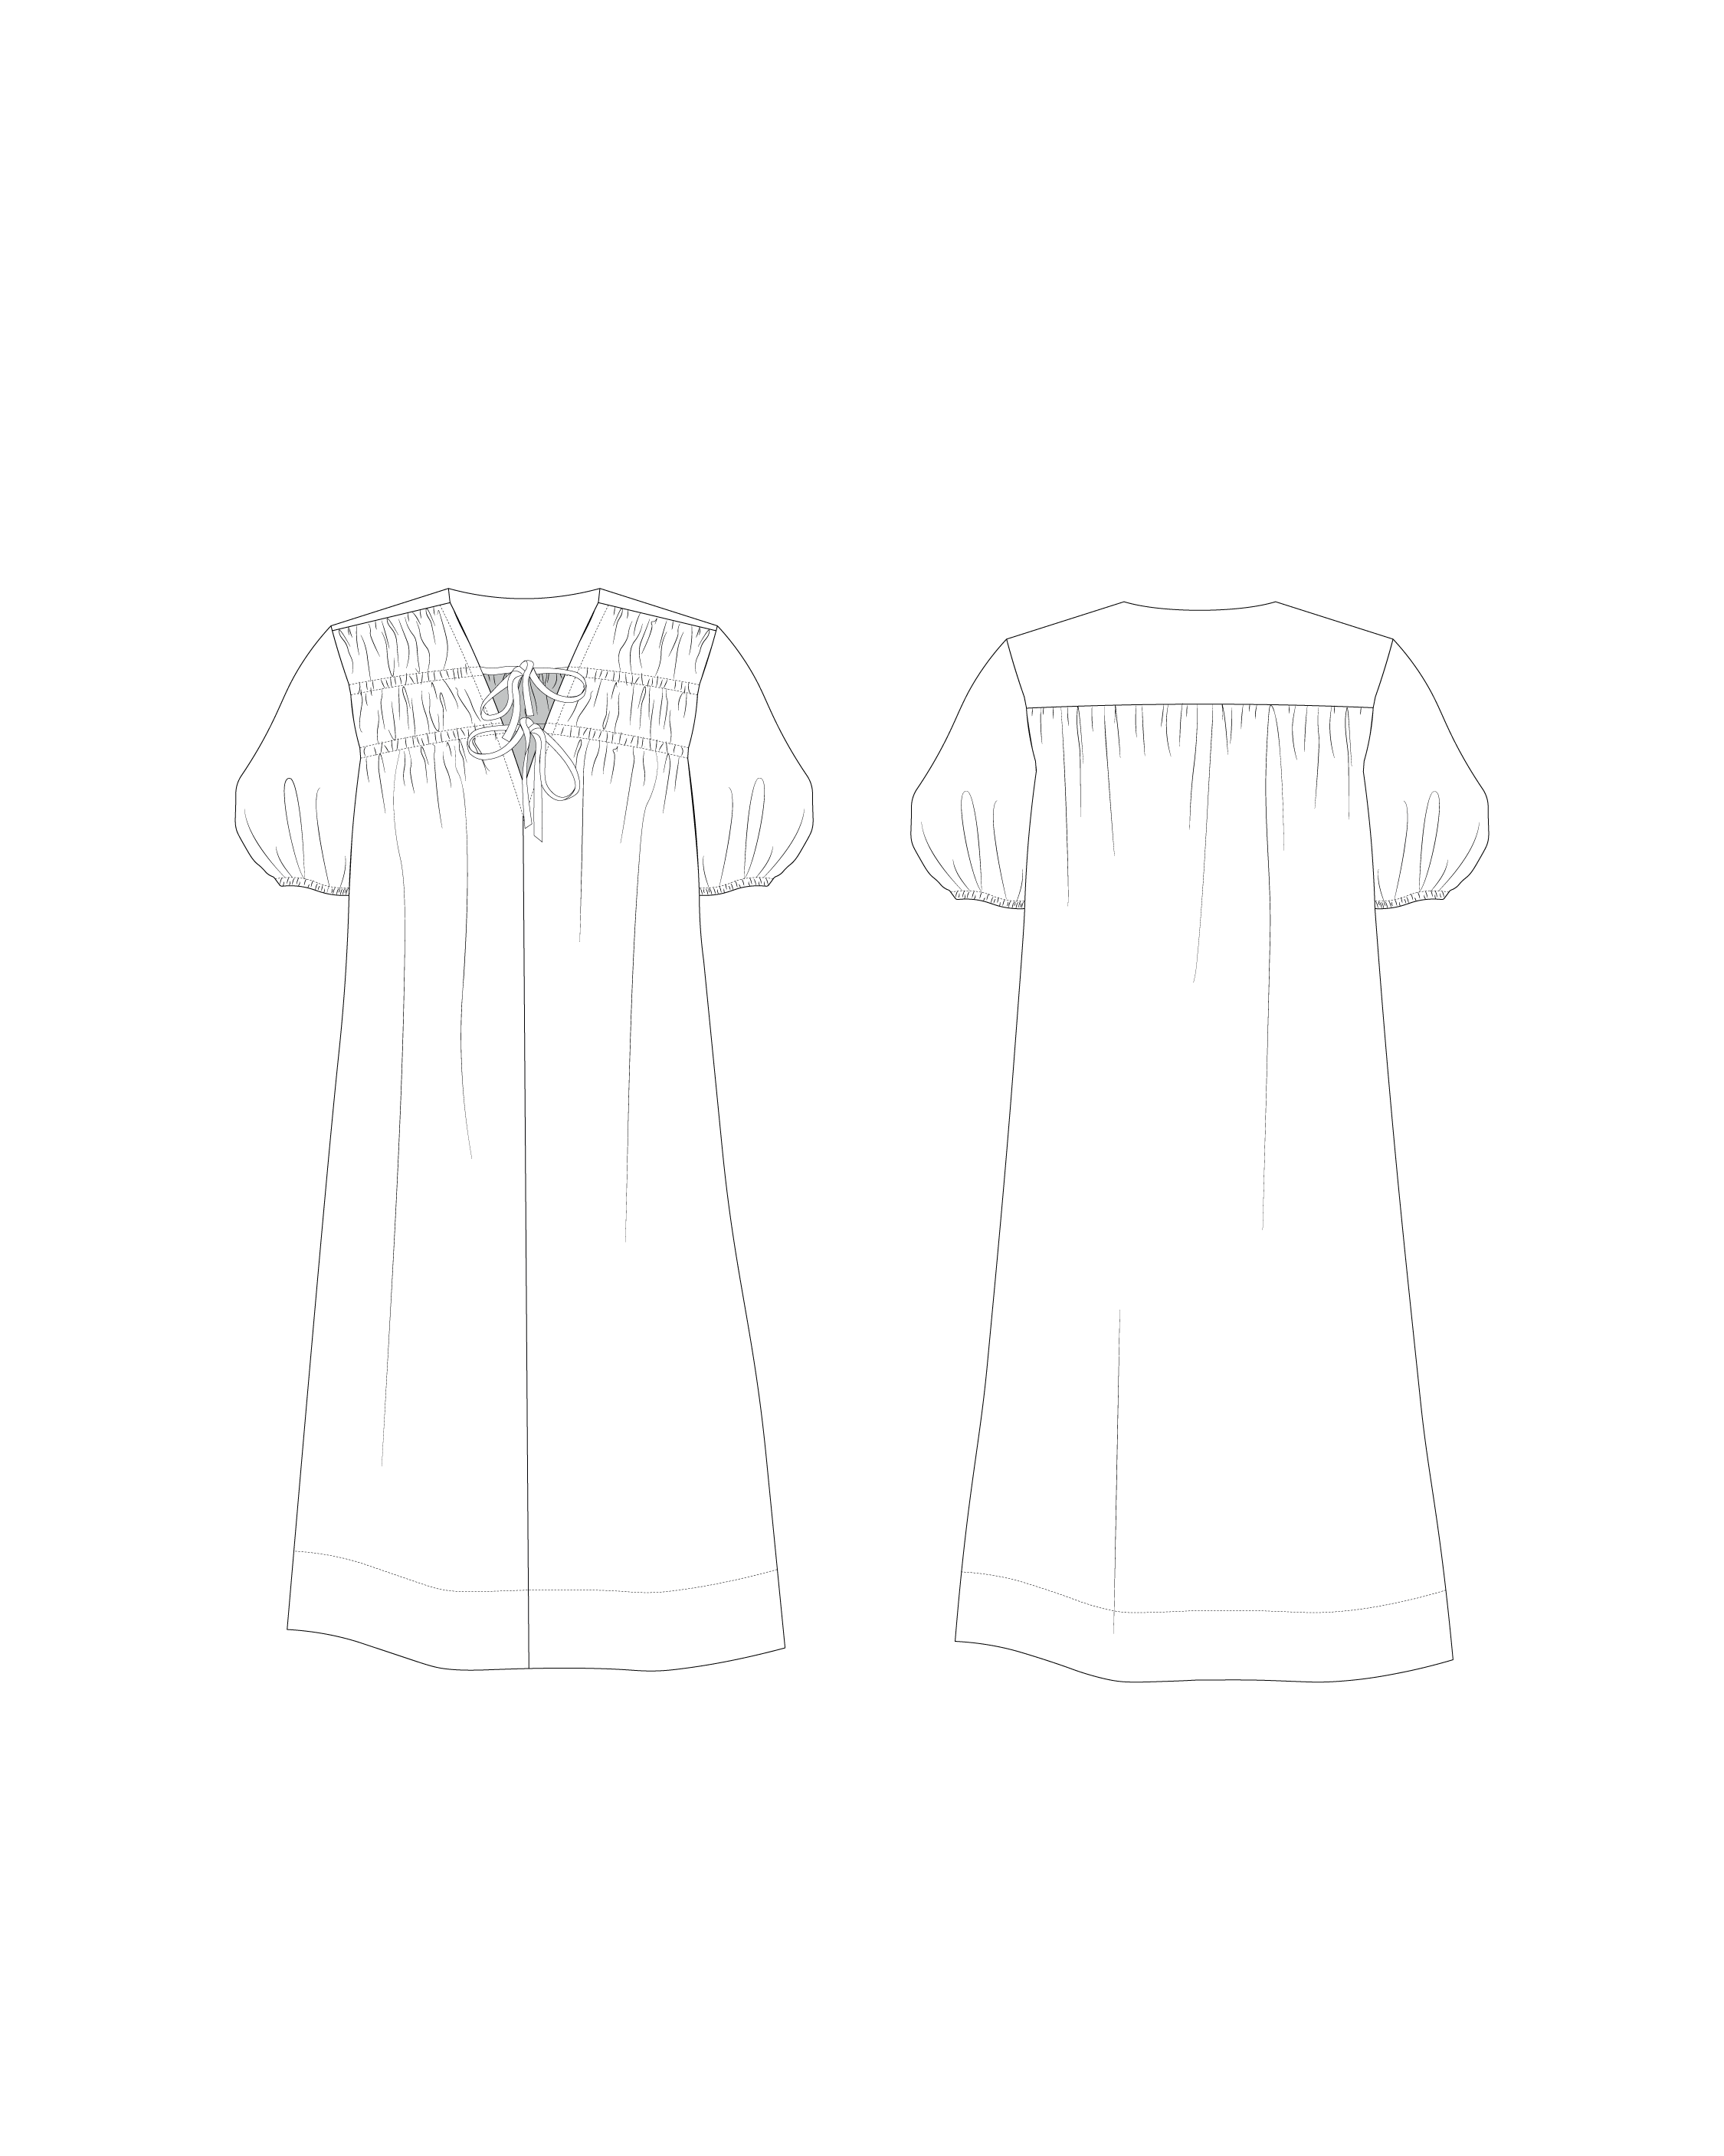 Dae Dress PDF Pattern Size 6-24